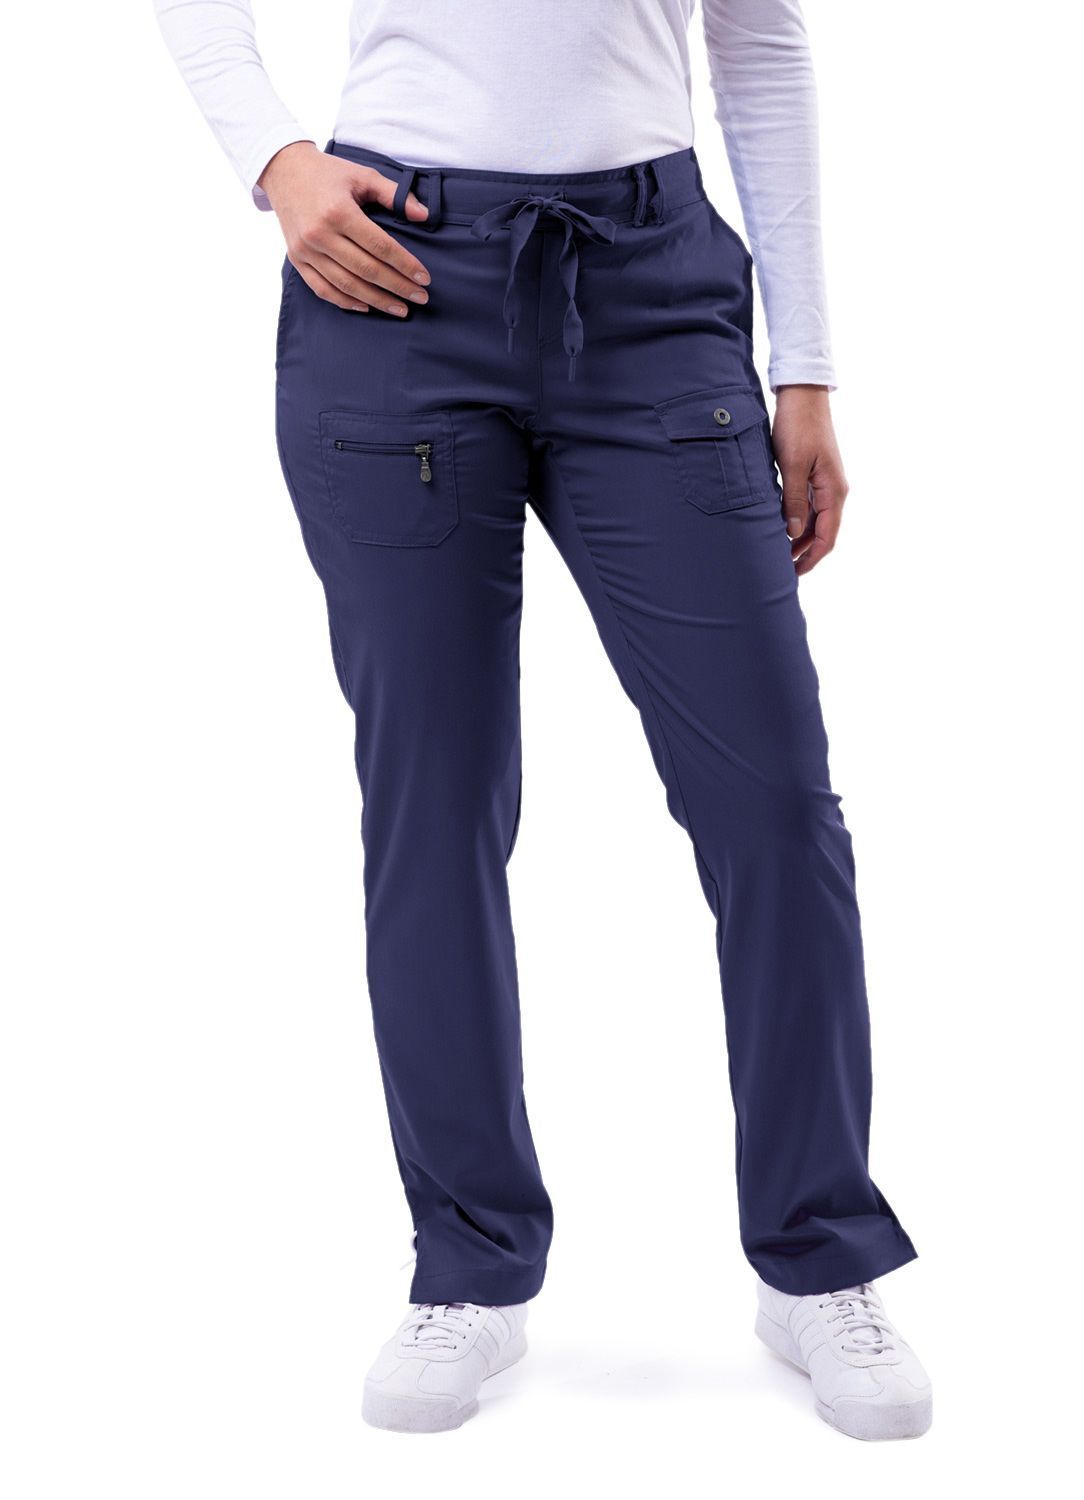 Clearance Adar Pro Tall Slim Fit 6-Pocket Pants